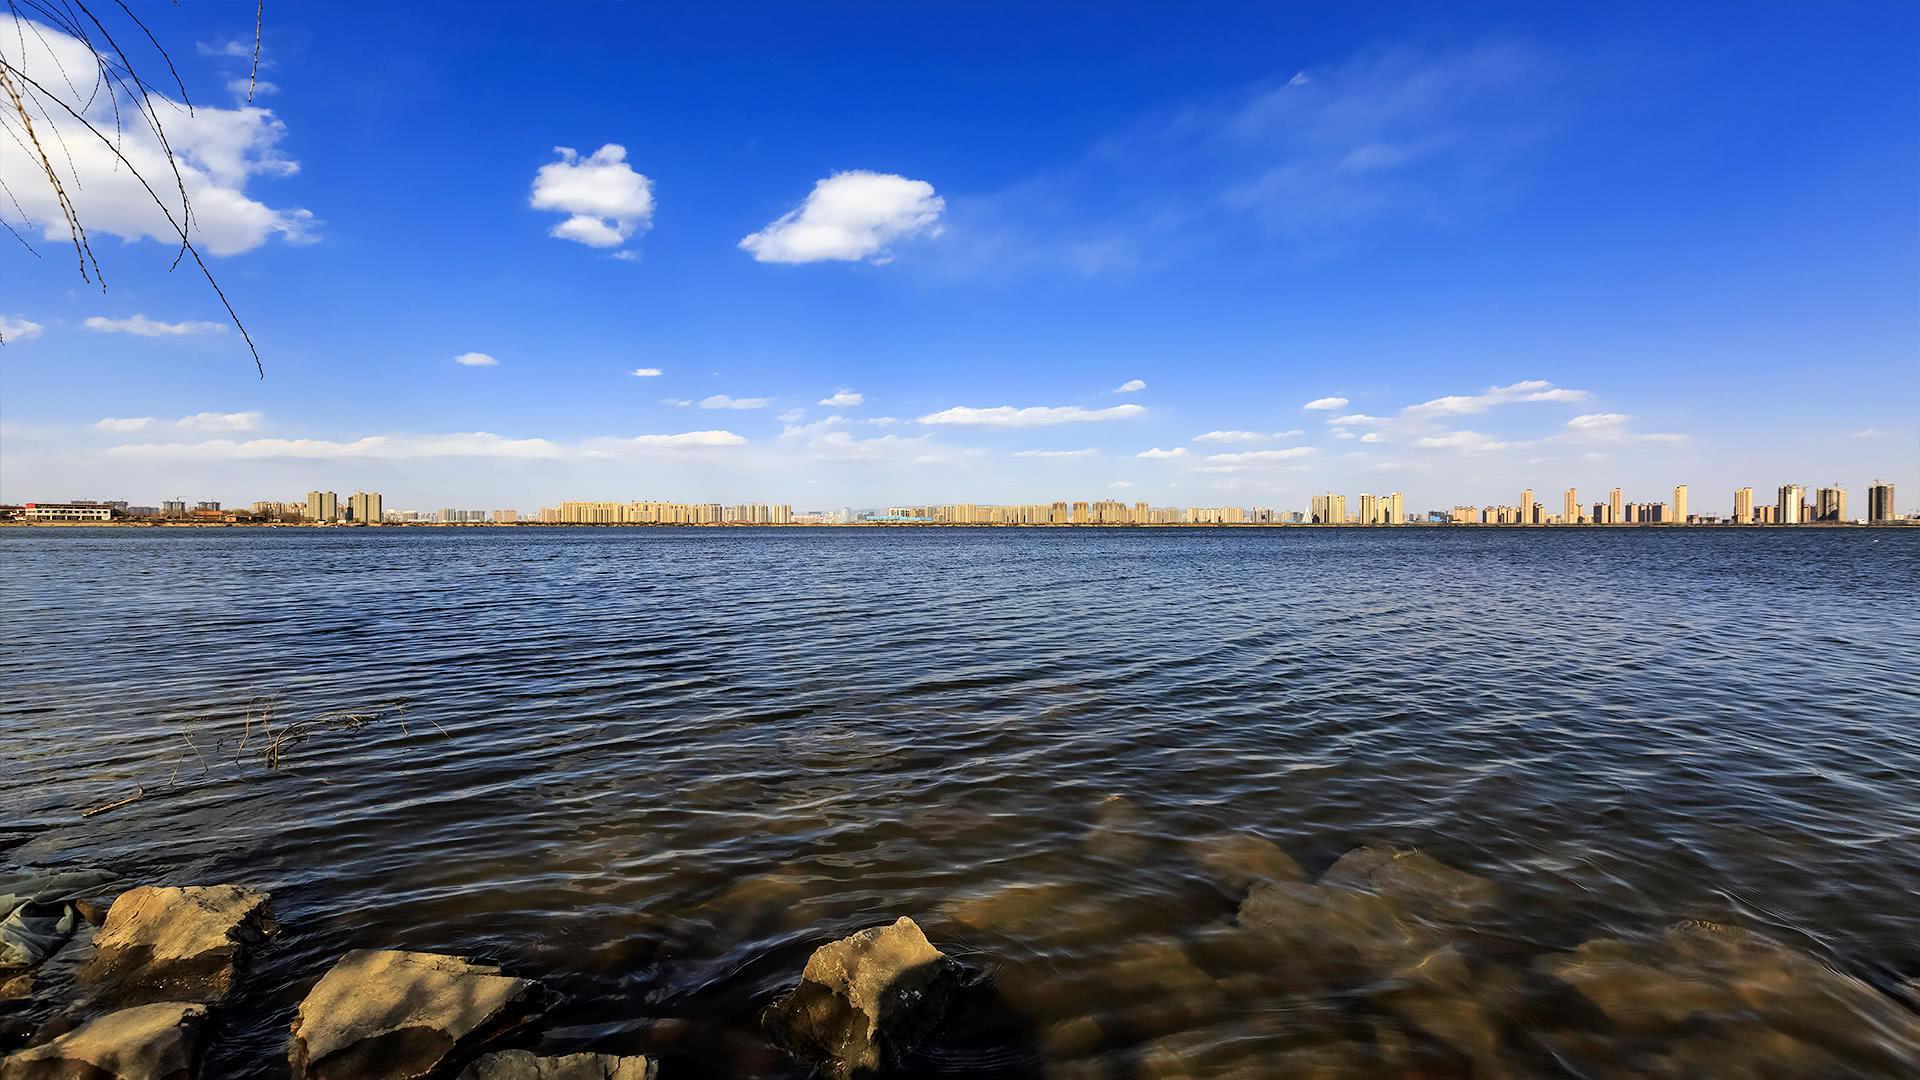 山西被忽略的一处湖泊,是华北地区最大的人工湖,不收门票